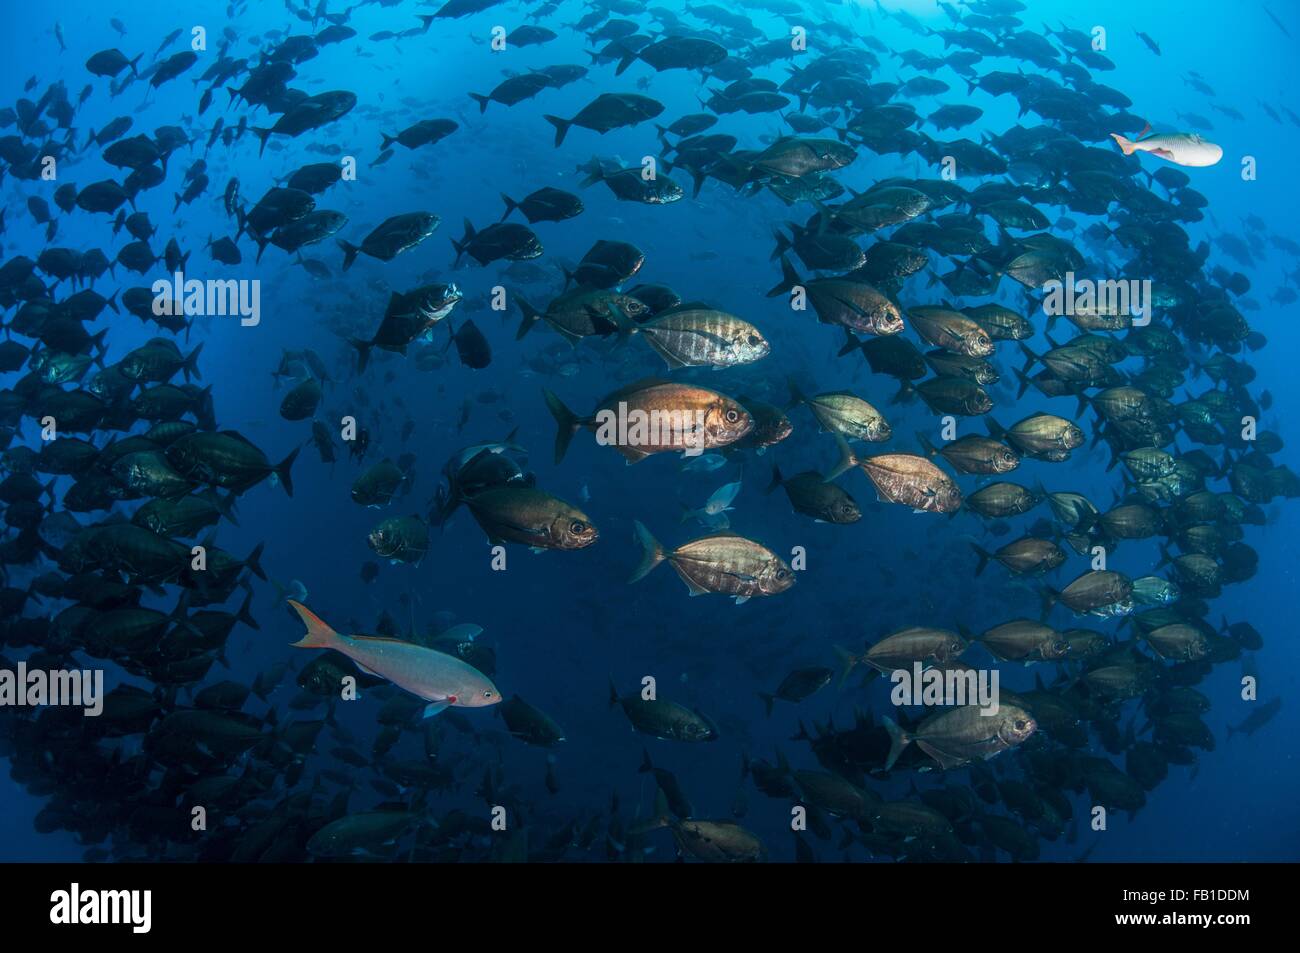 Vue sous-marine variété d'espèces de poissons nageant ensemble des îles du Pacifique mexicain Mexique Revillagigedo Roca Partida Banque D'Images